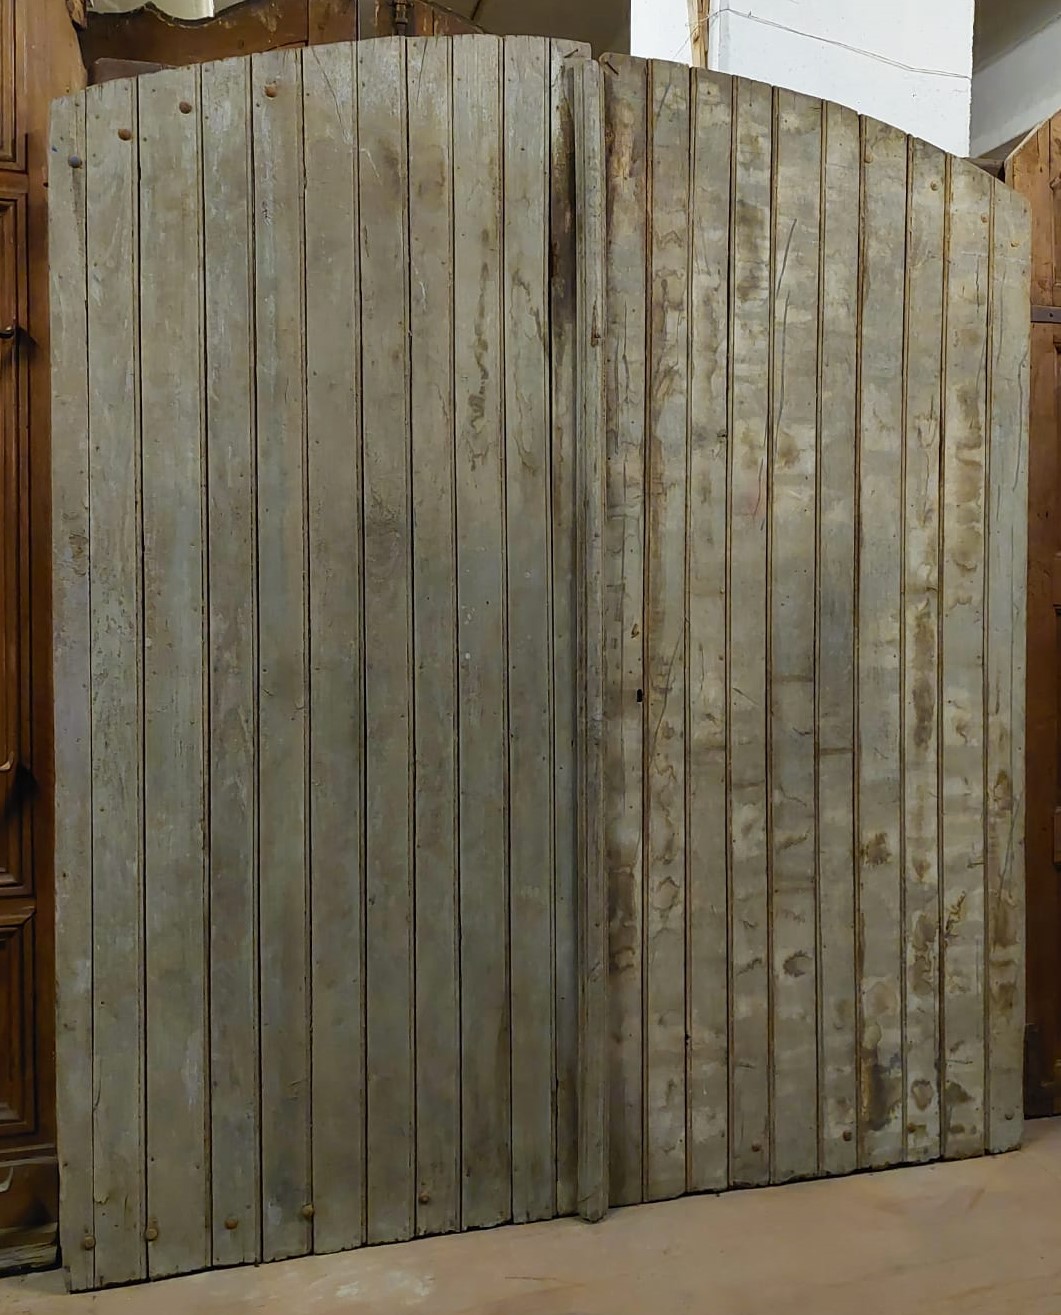 ptn256 - wooden door, 19th century, Piedmont origin, meas. cm w 220 x h 258 